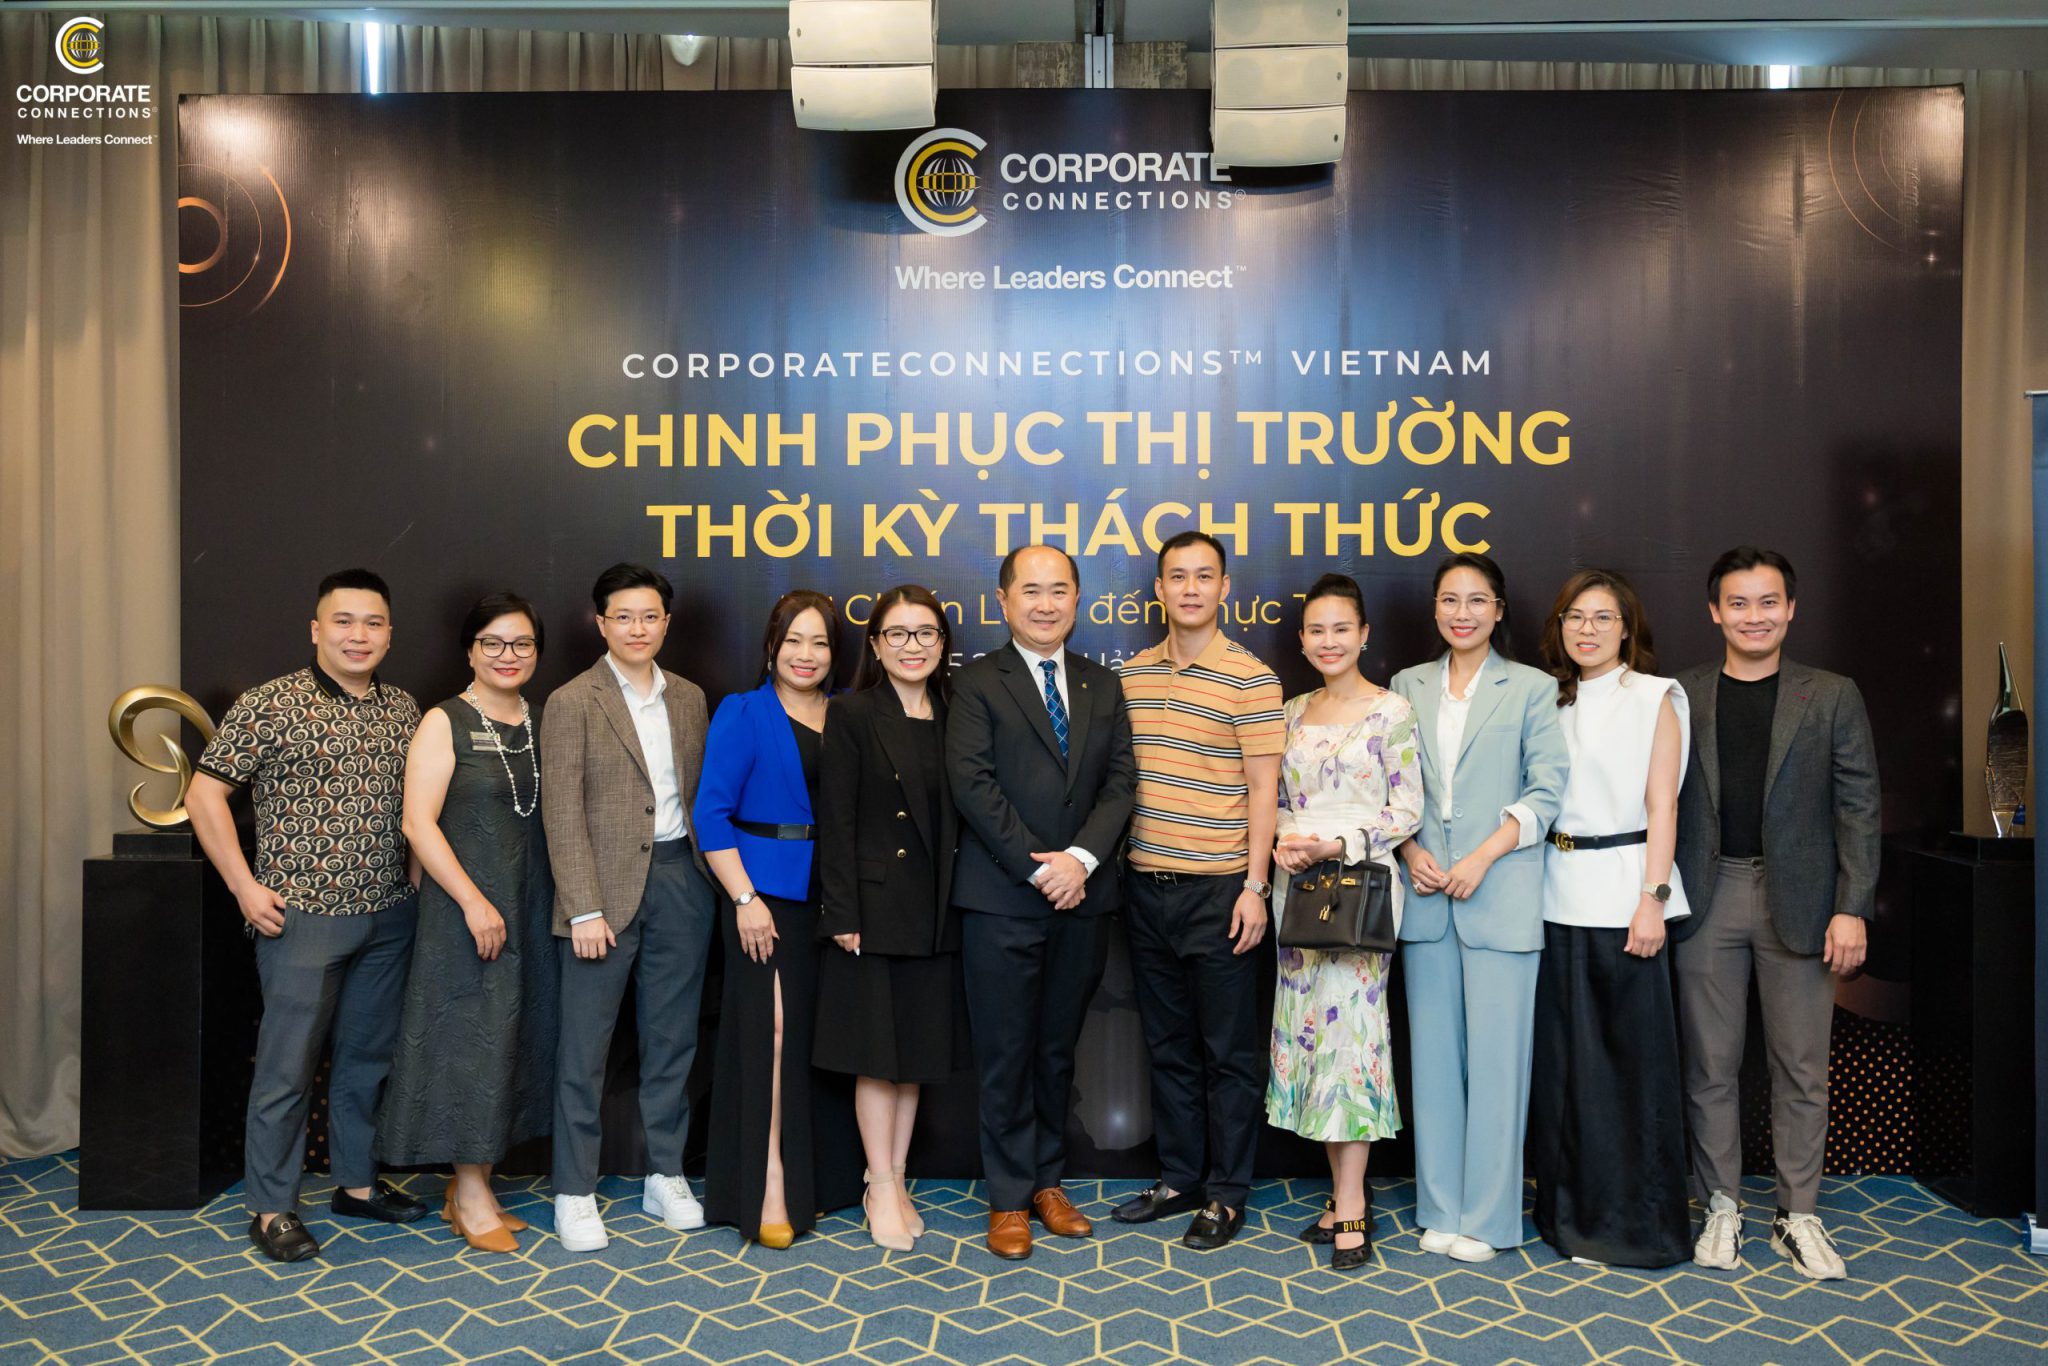 Đại diện ban lãnh đạo VNS Group tham gia sự kiện đặc biệt của Tổ chức kết nối doanh nhân Corporate Connections